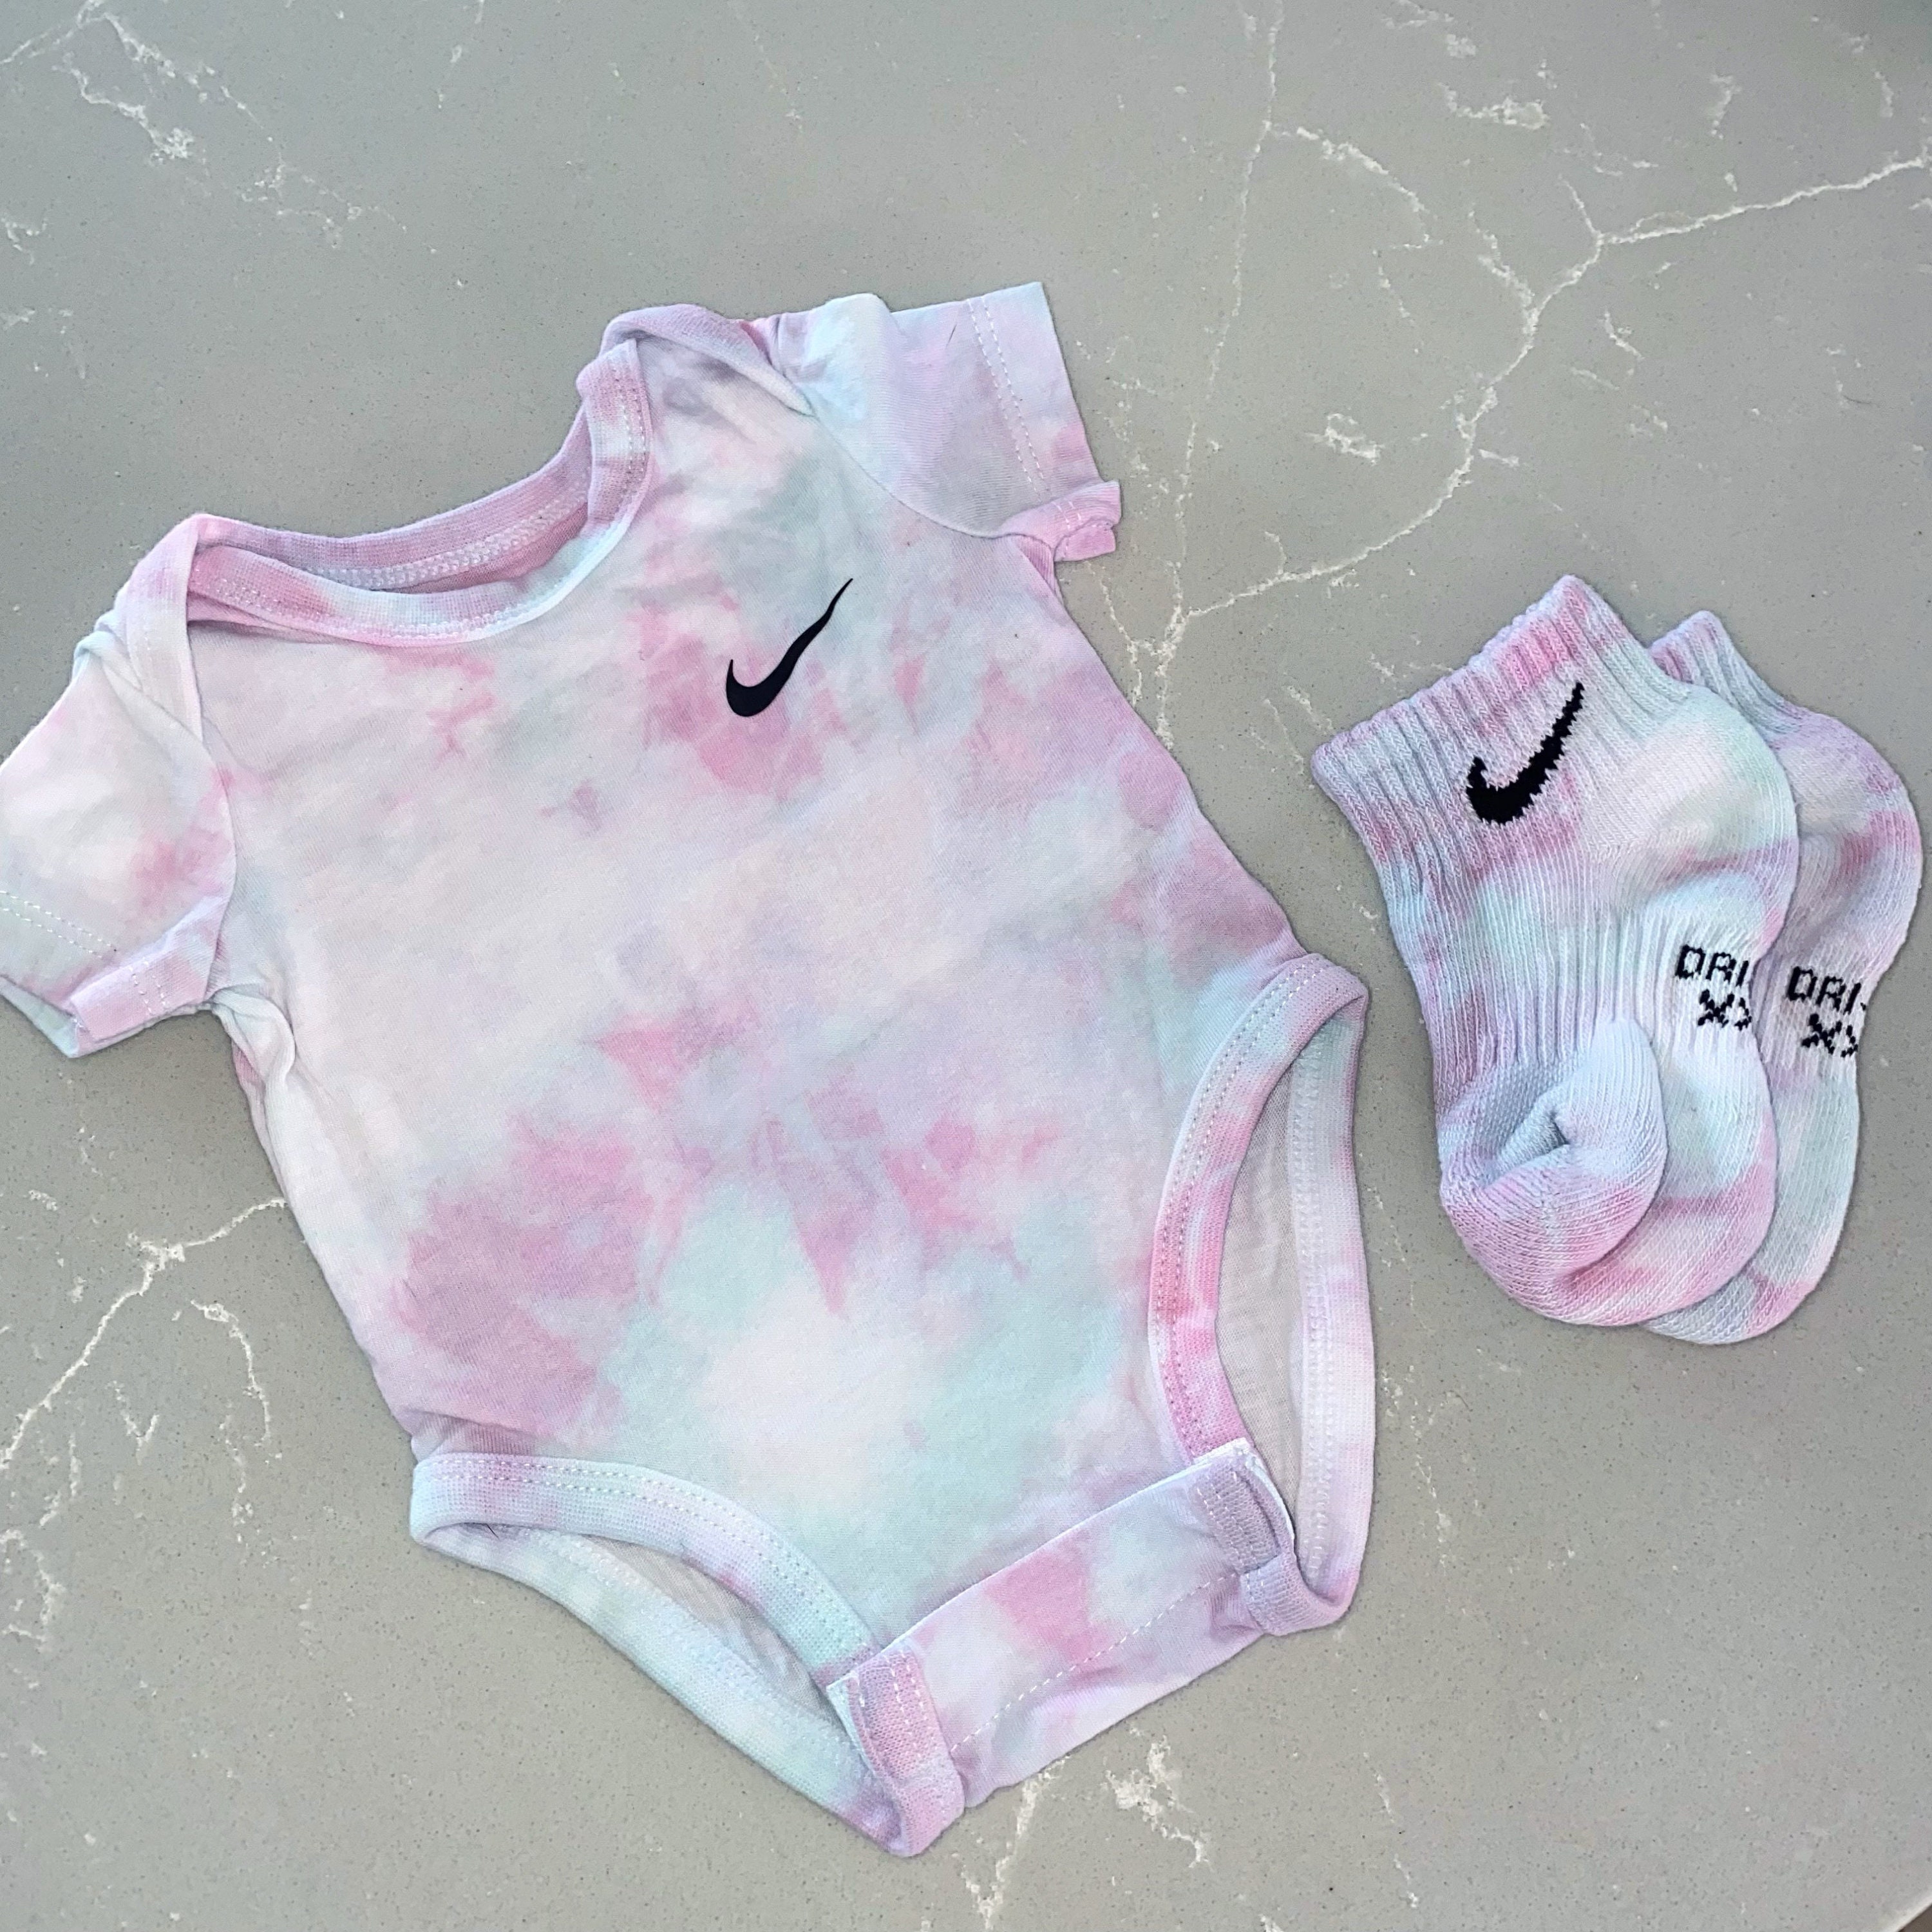 blootstelling leraar tekort Nike Tie Dye Newborn Baby Grow & Matching Socks Made to - Etsy